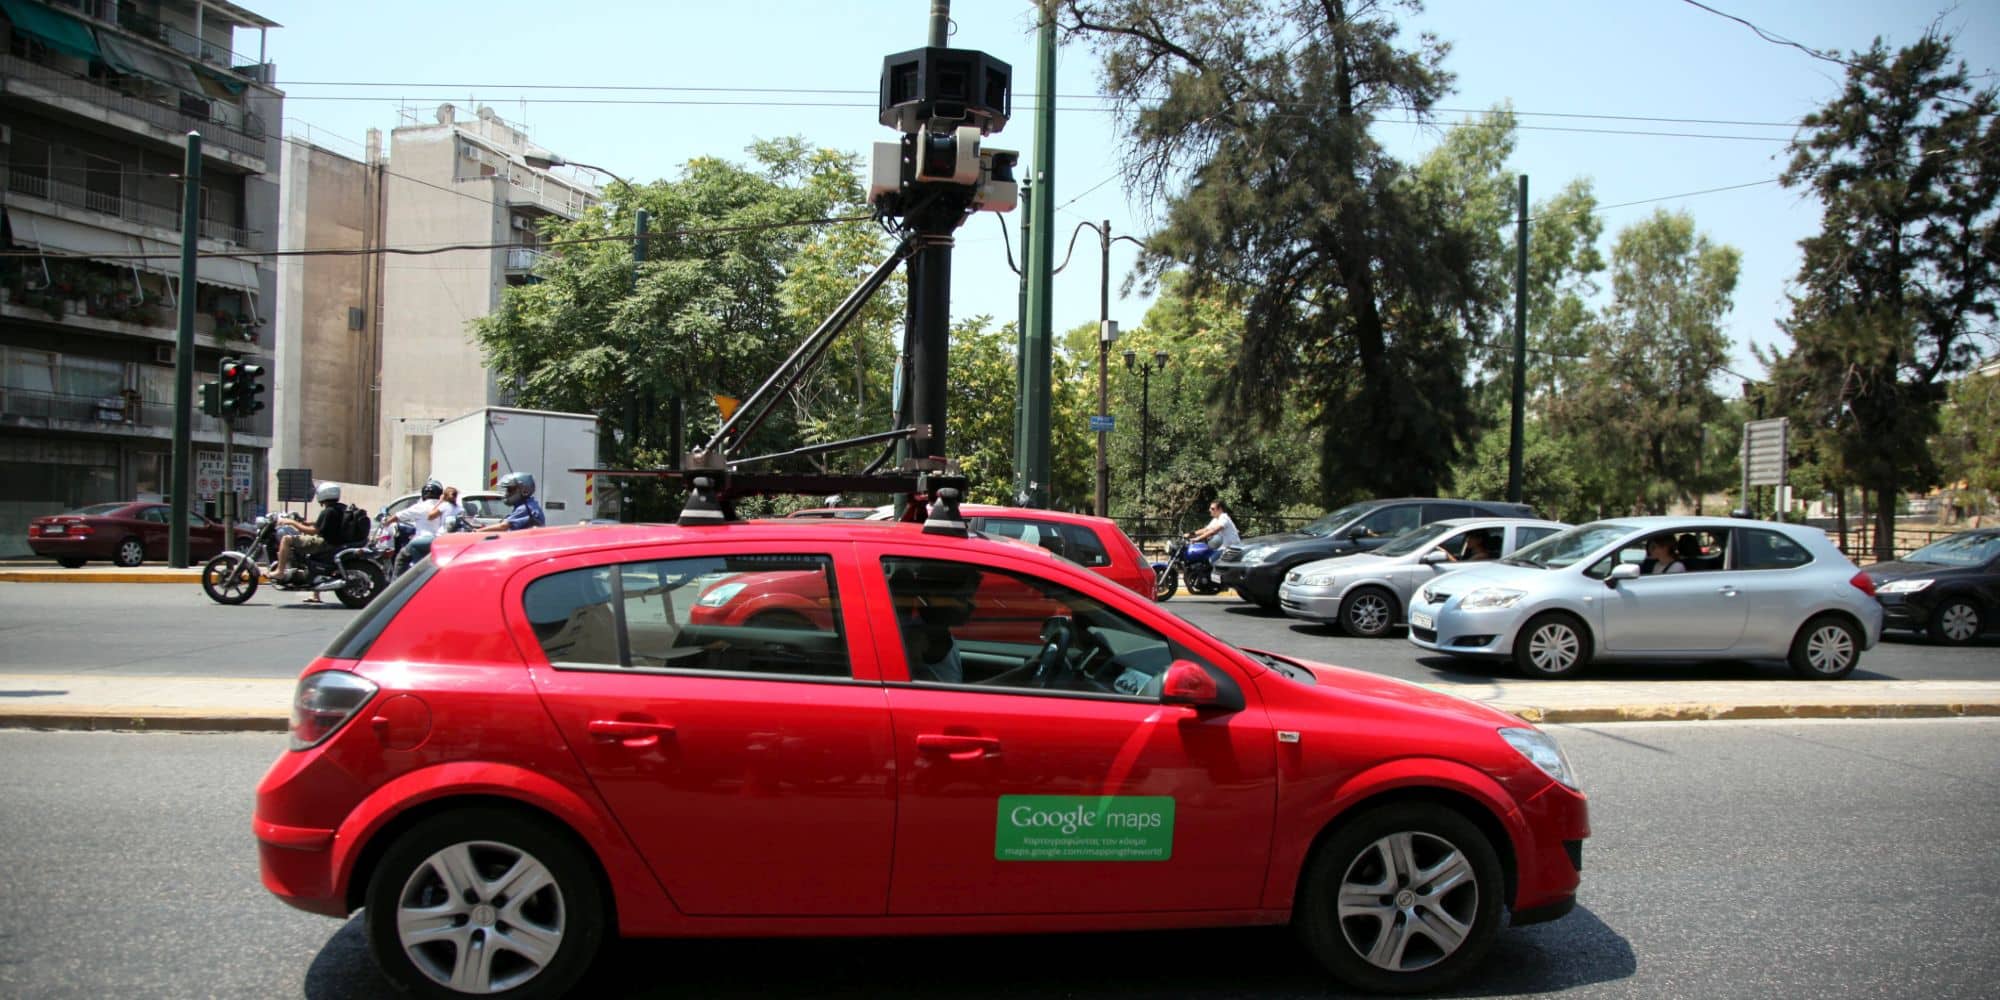 Το αυτοκίνητο του Google Maps στους δρόμους